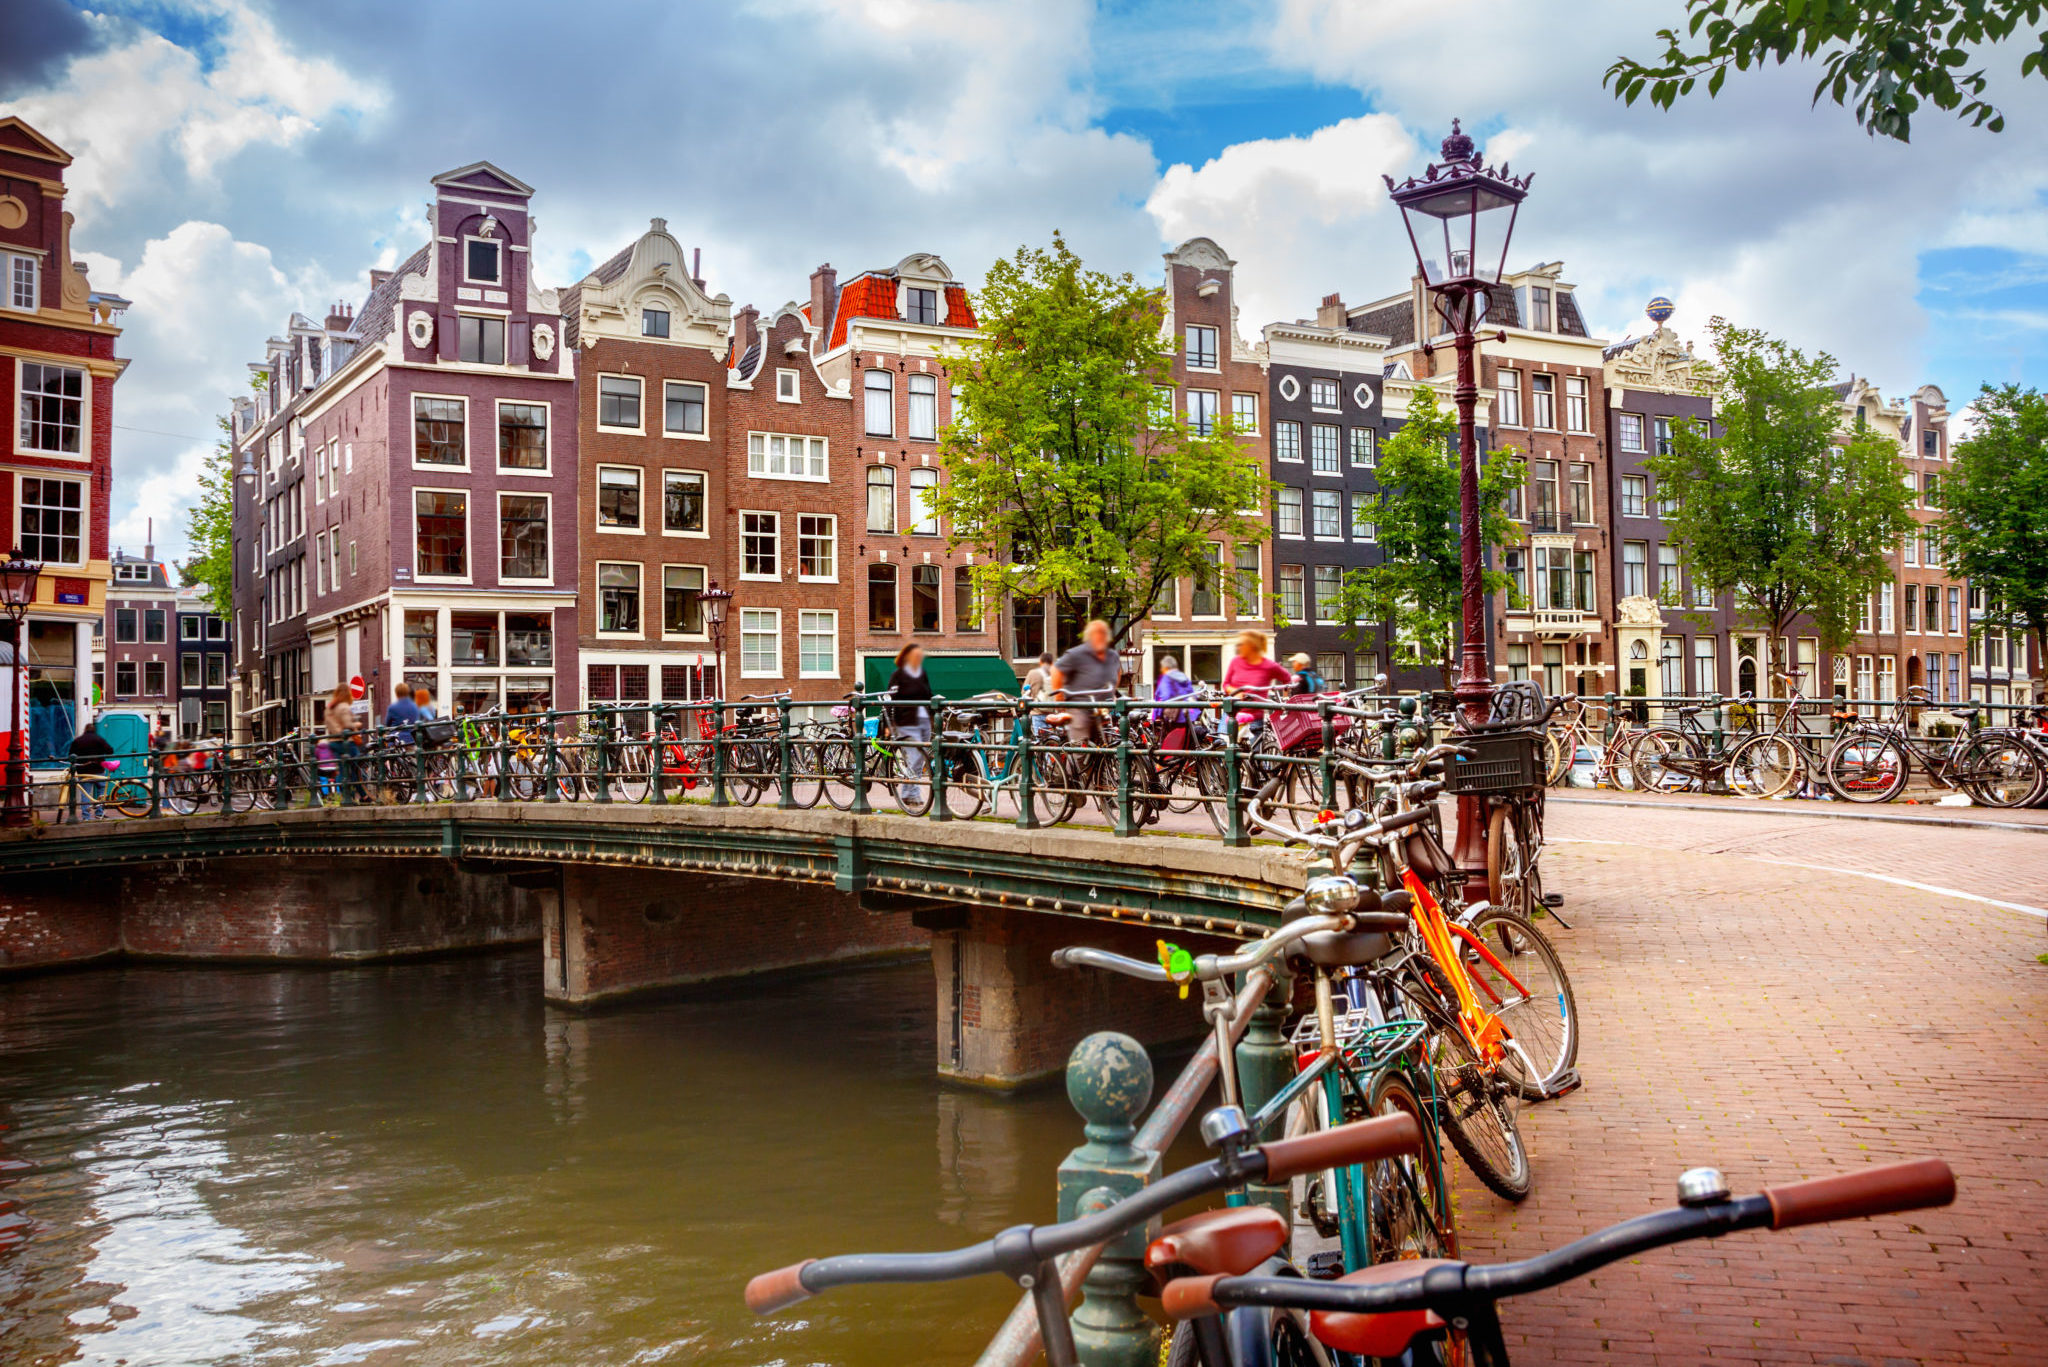 Kamerverhuur in Amsterdam: check of een vergunning nodig is